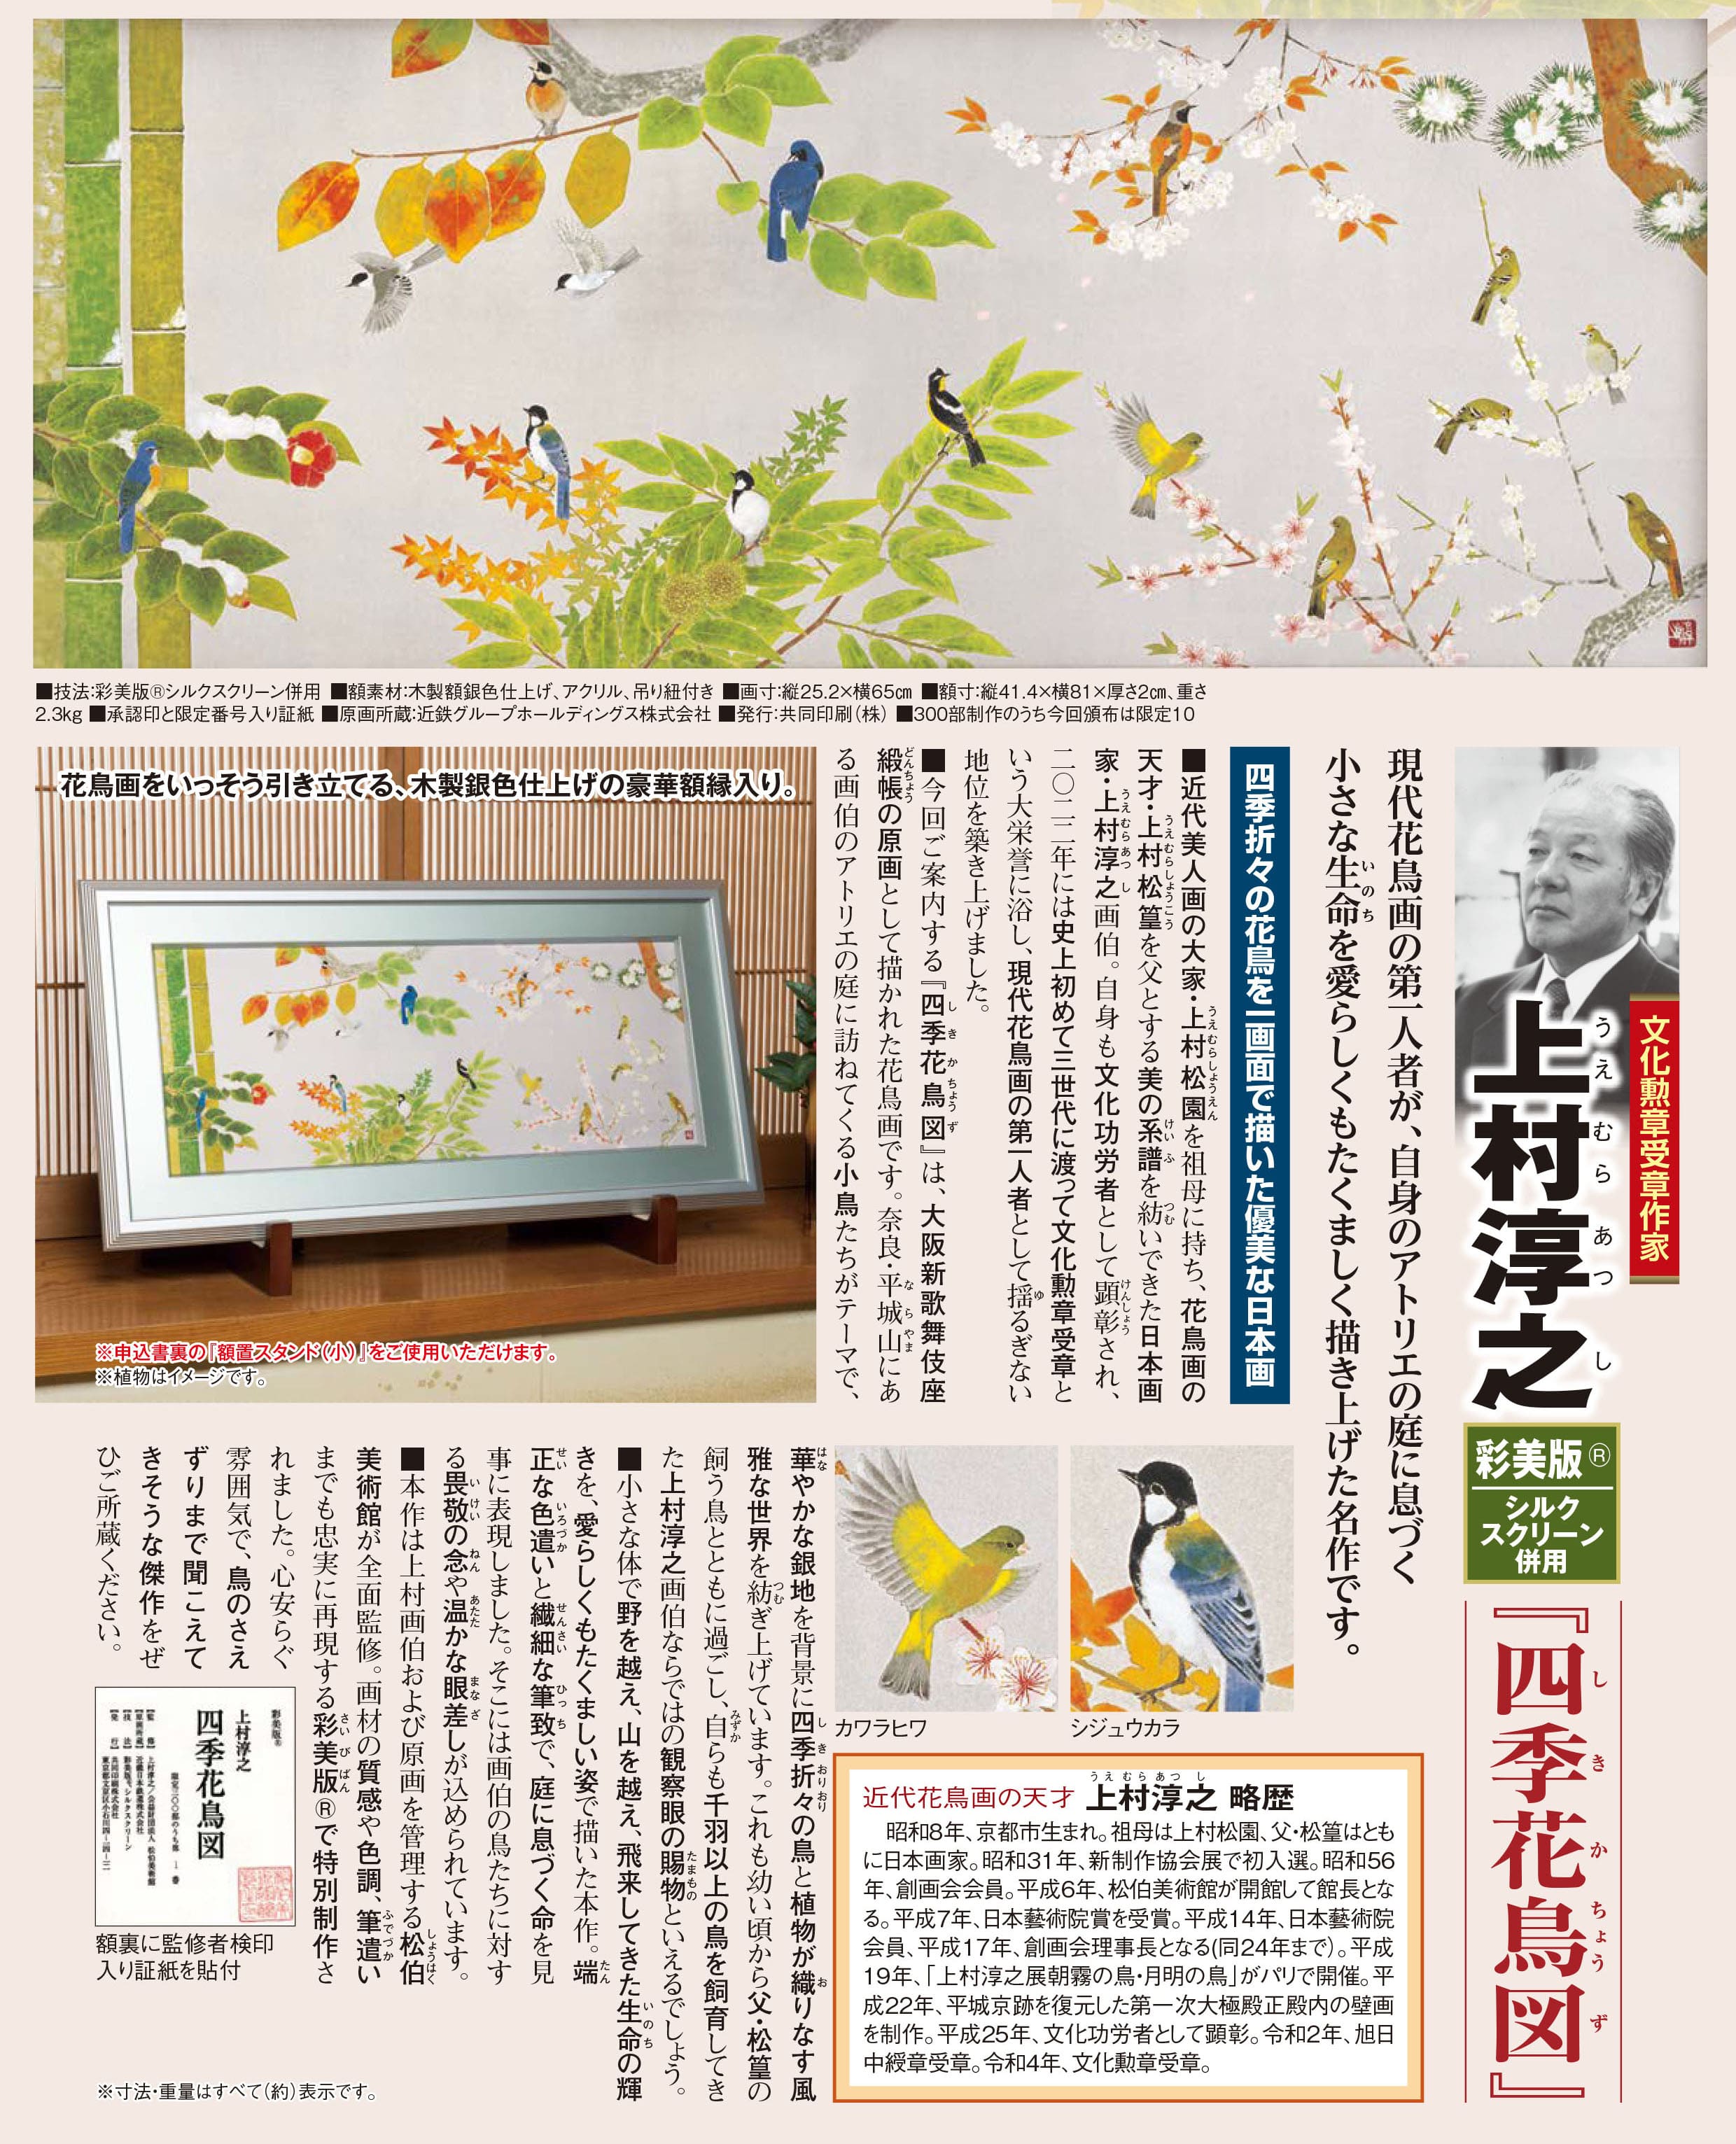 上村淳之 彩美版シルクスクリーン併用『四季花鳥図』 | 東京書芸館公式